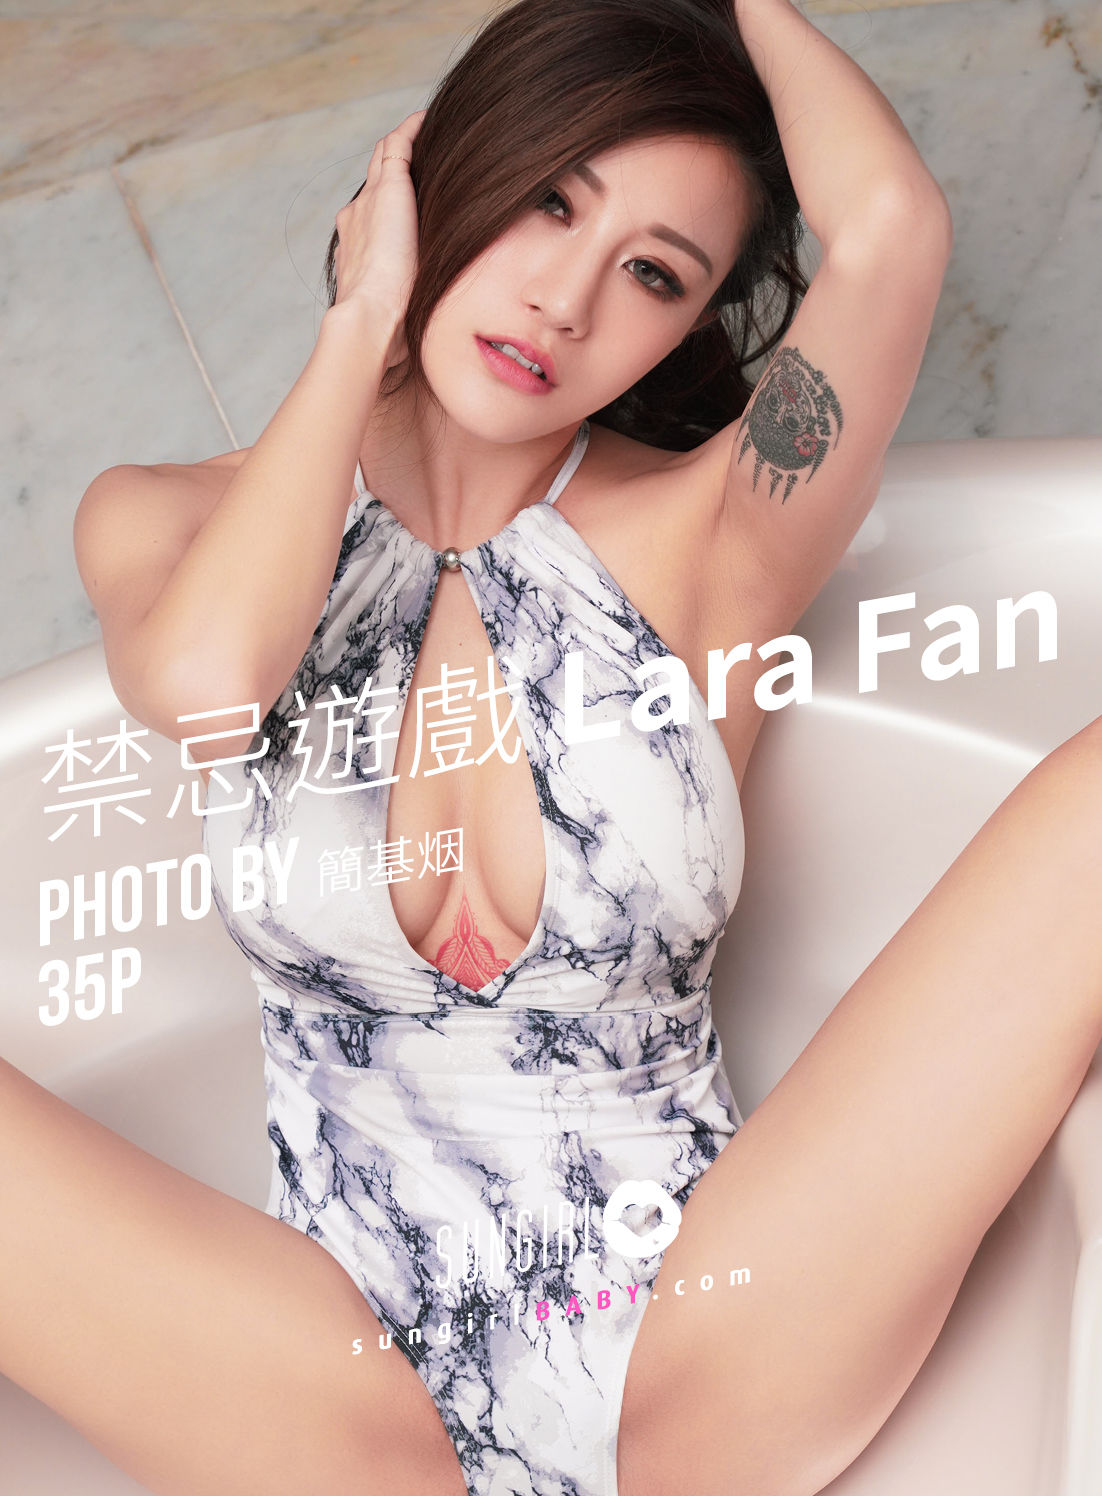 [阳光宝贝SUNGIRL] No.036 Lara Fan 禁忌遊戏 Lara1